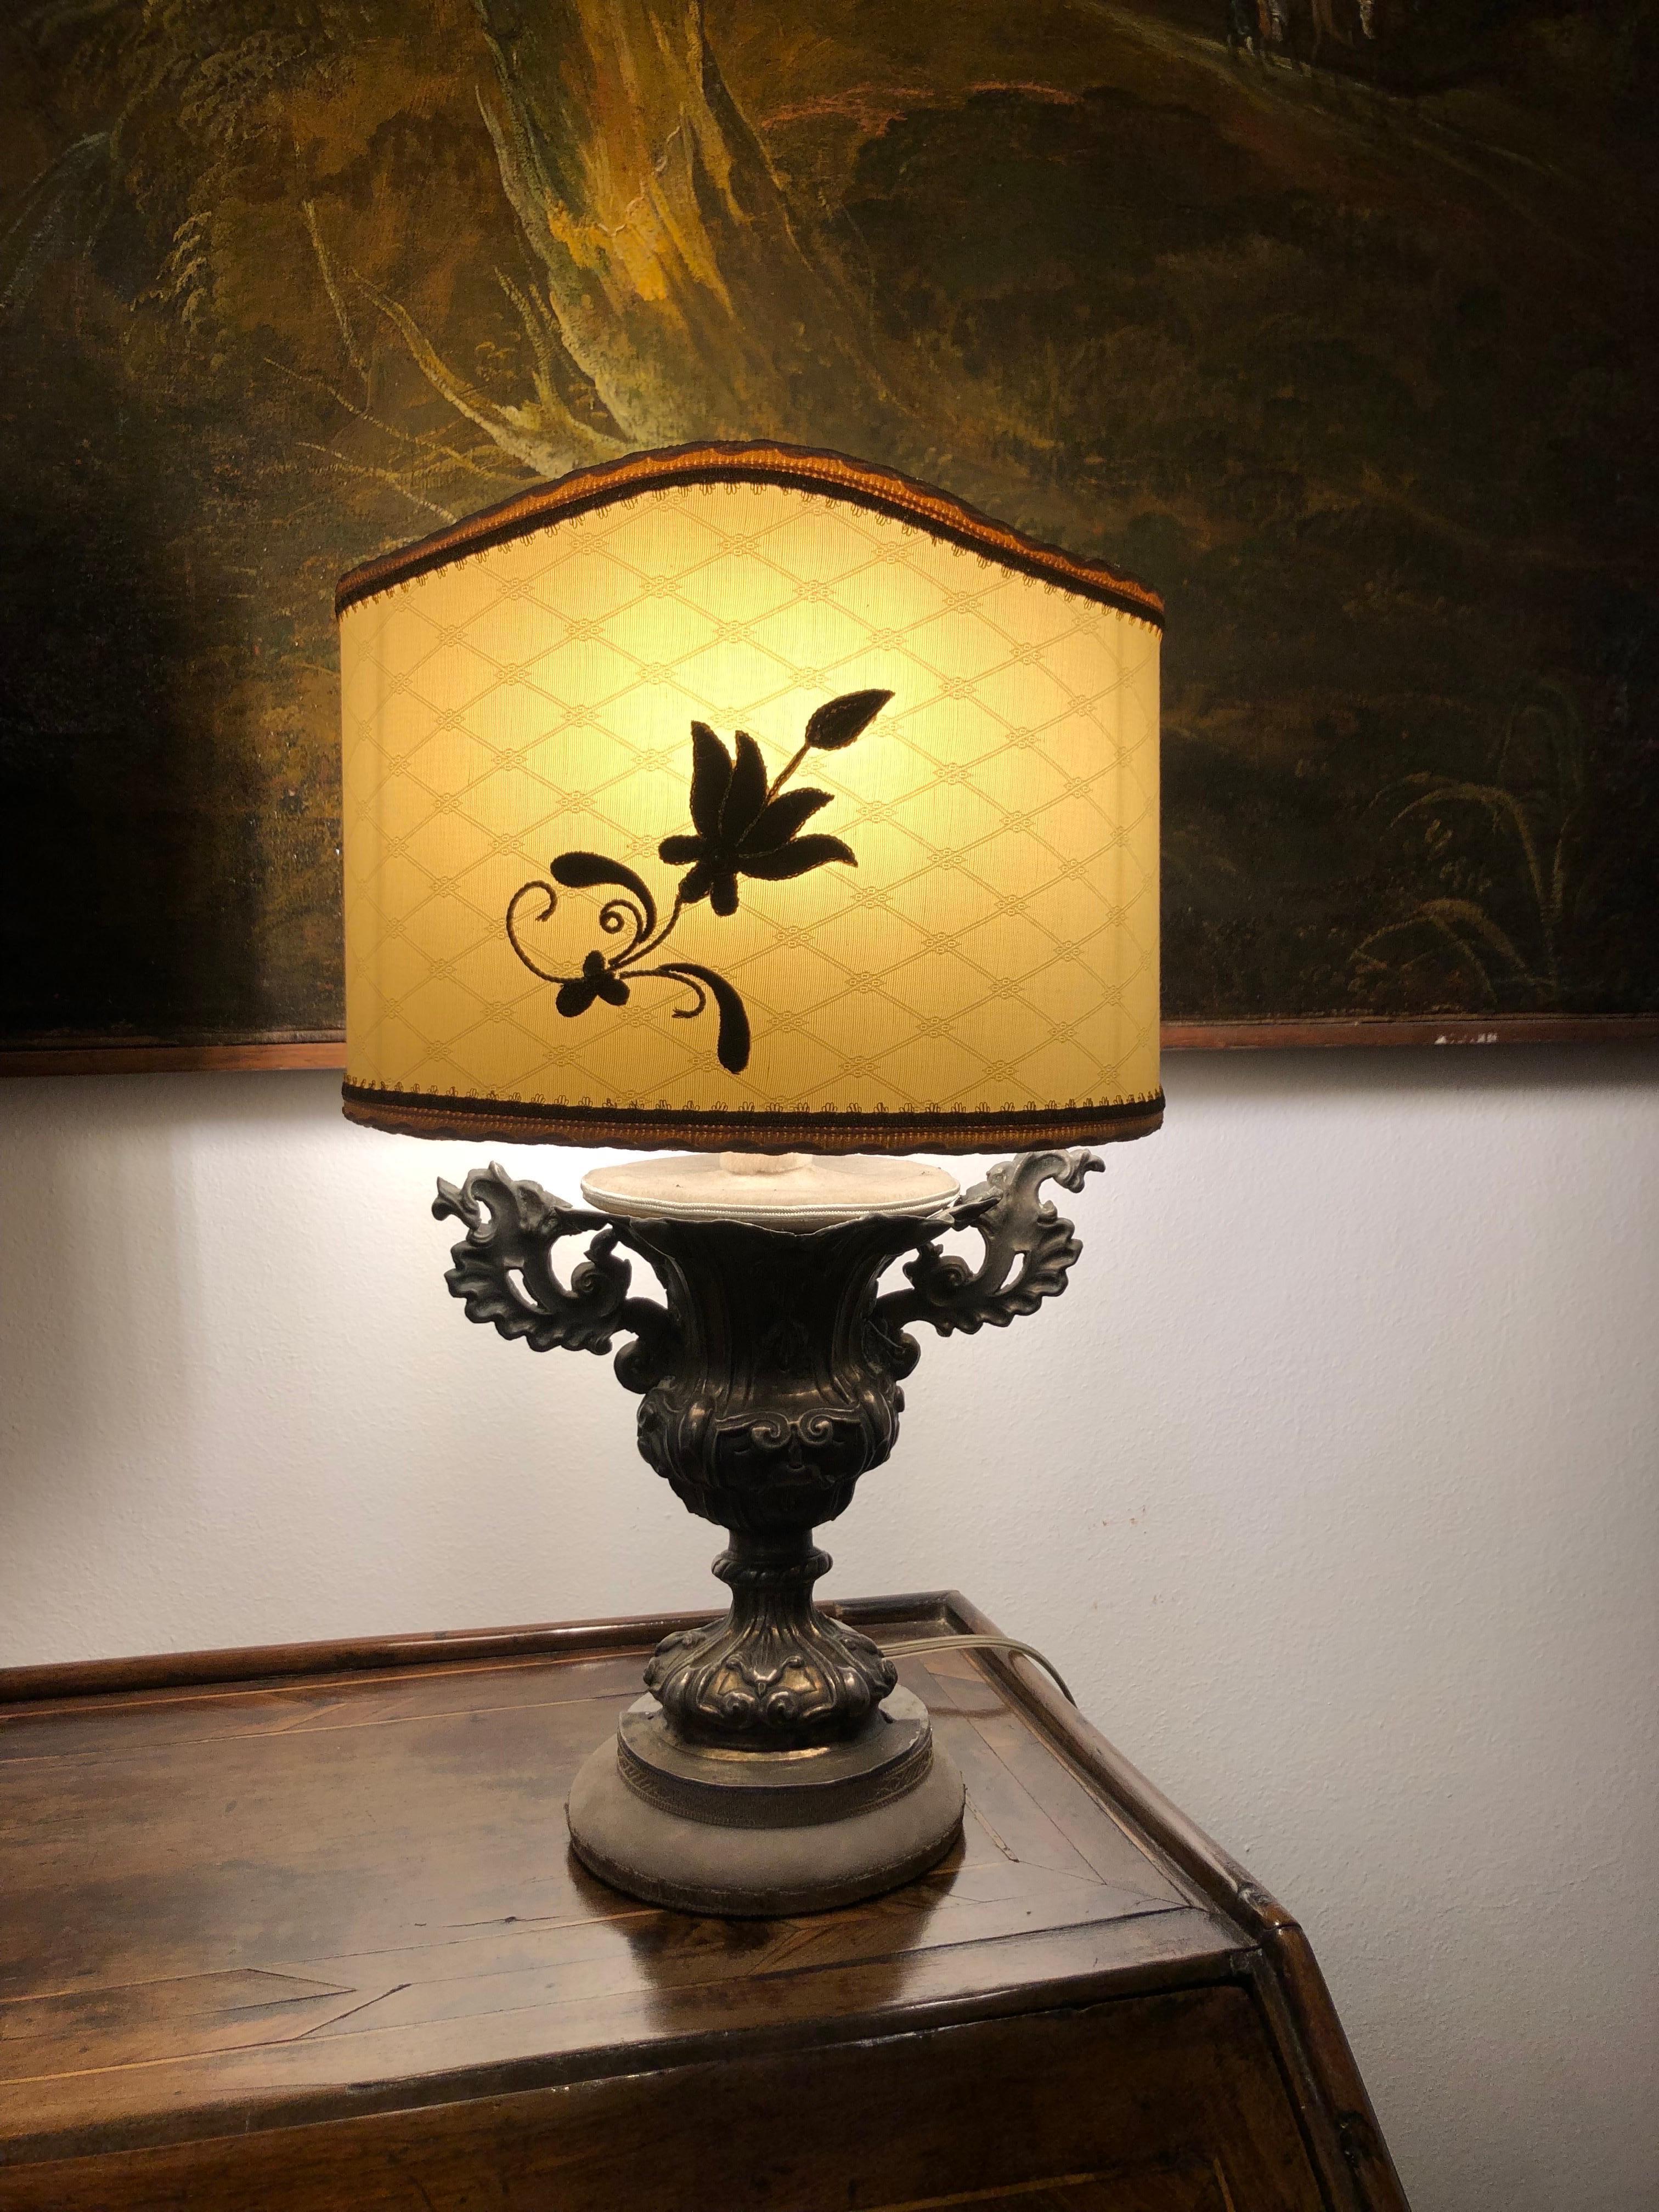 Versilberte Tischlampe um 1700 mit fächerförmigem Schirm, Demi-Lune italienischer Herkunft. Es handelt sich um eine barocke Palmenvase aus versilberter Kupferfolie, die nur auf der Vorderseite geprägt ist. Dieses Artefakt stammt aus dem Ende des 18 